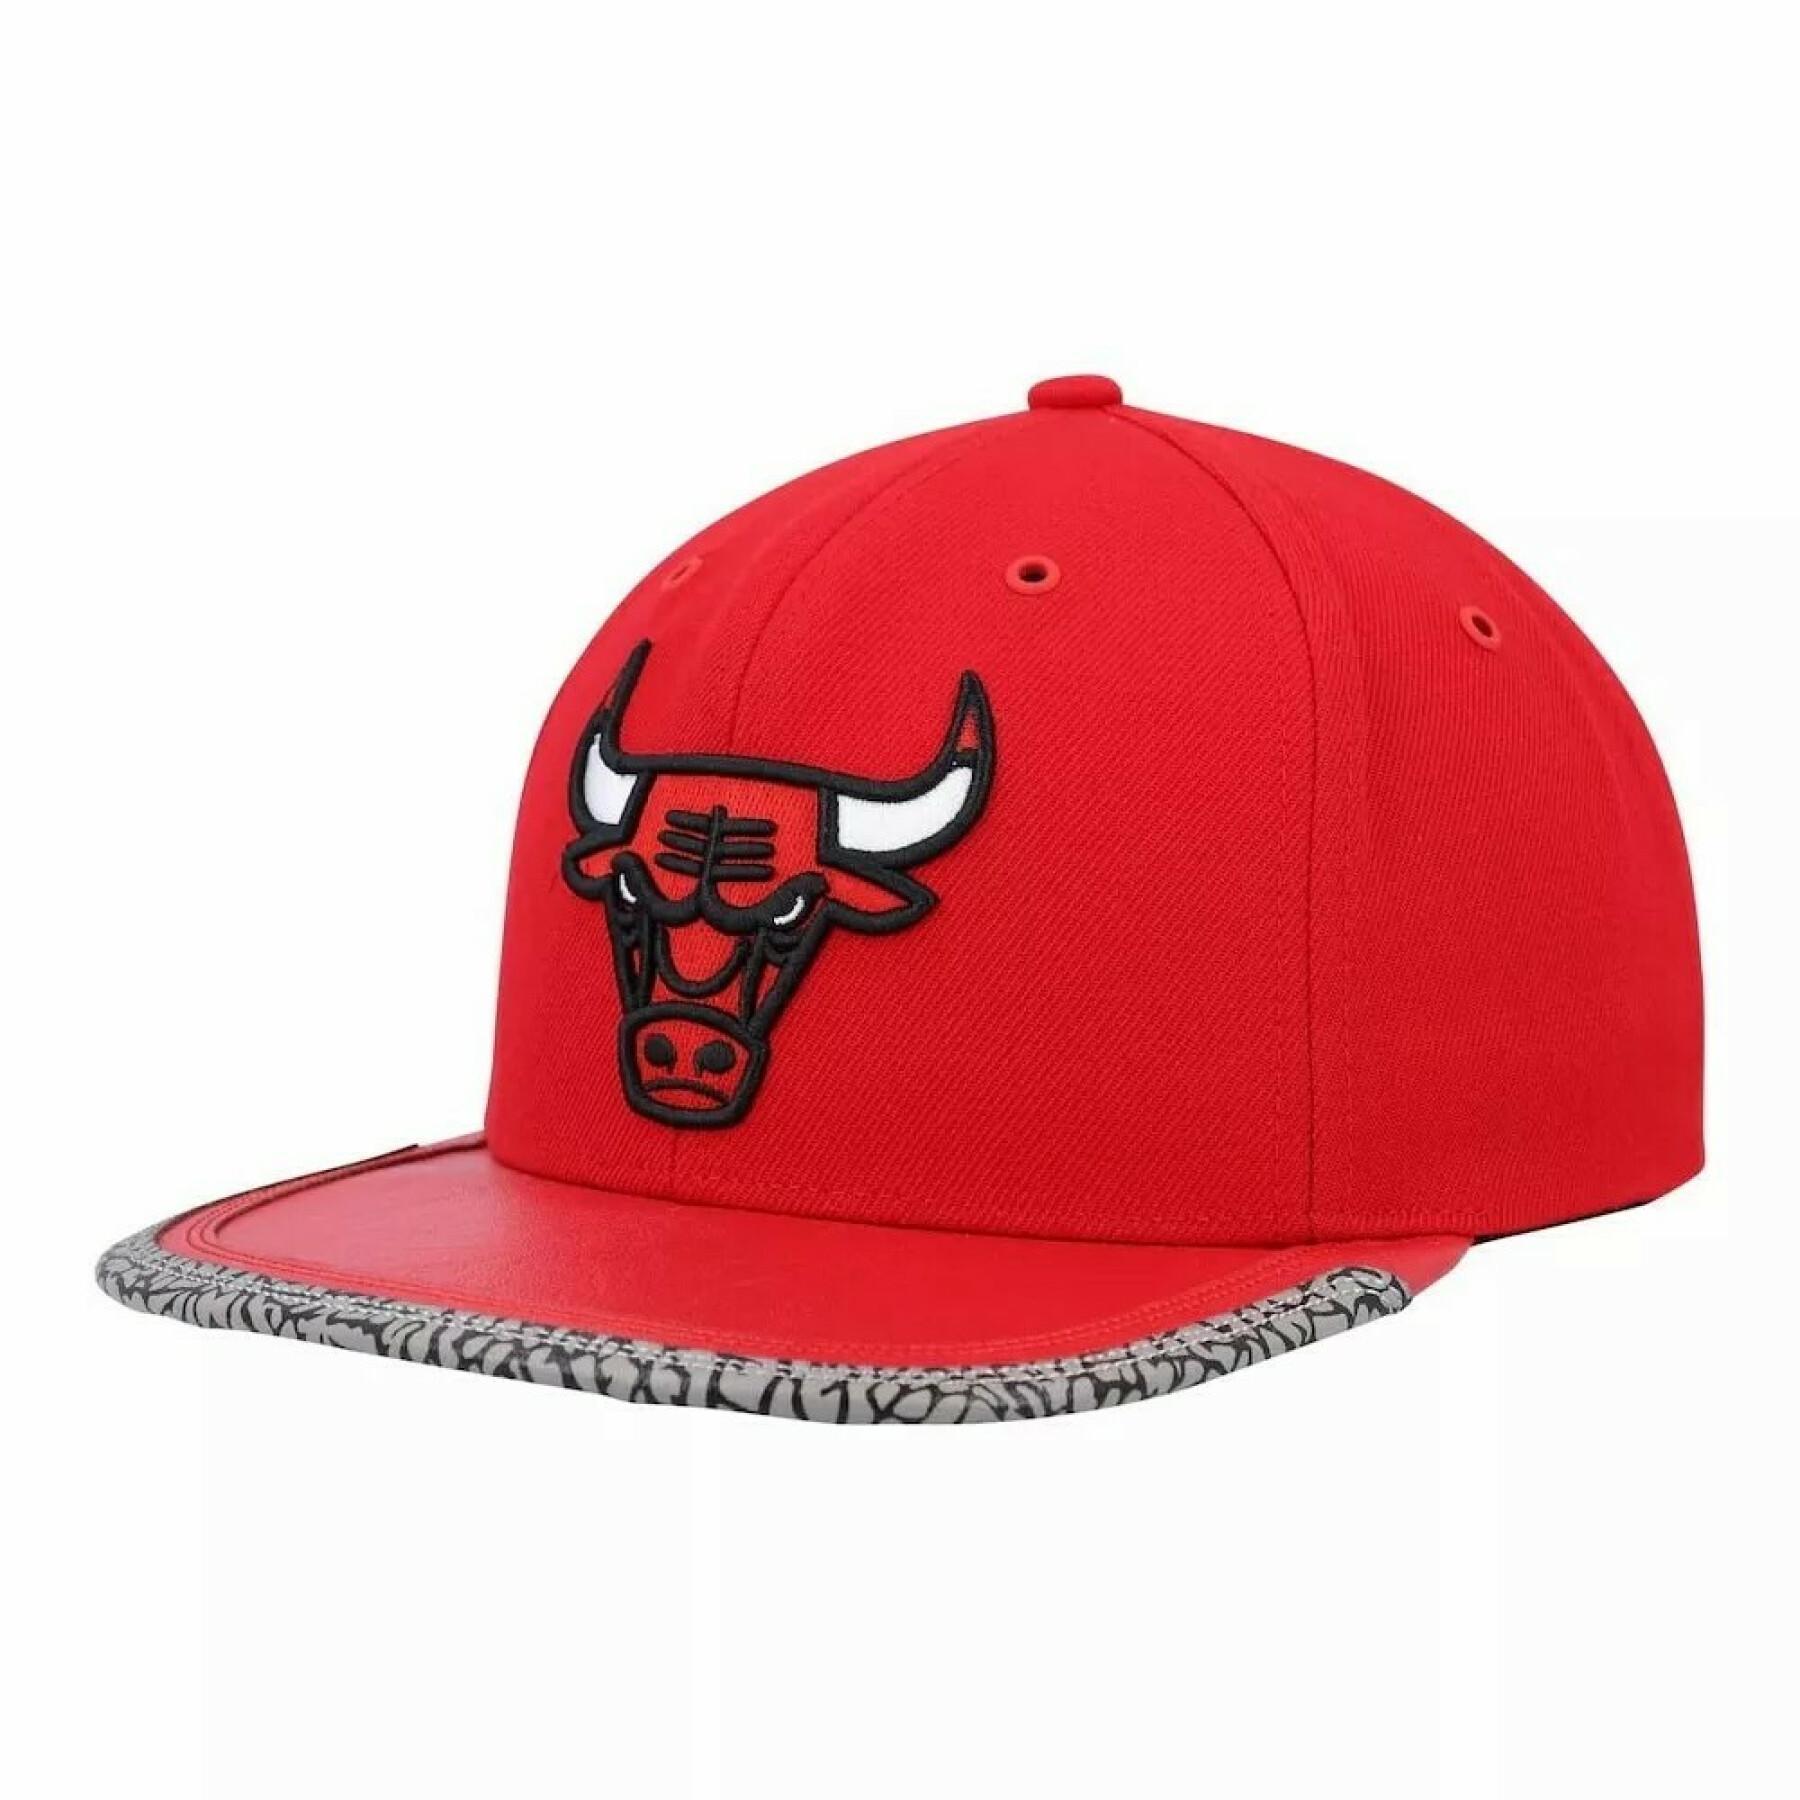 Cap day 3 Chicago Bulls 2021/22